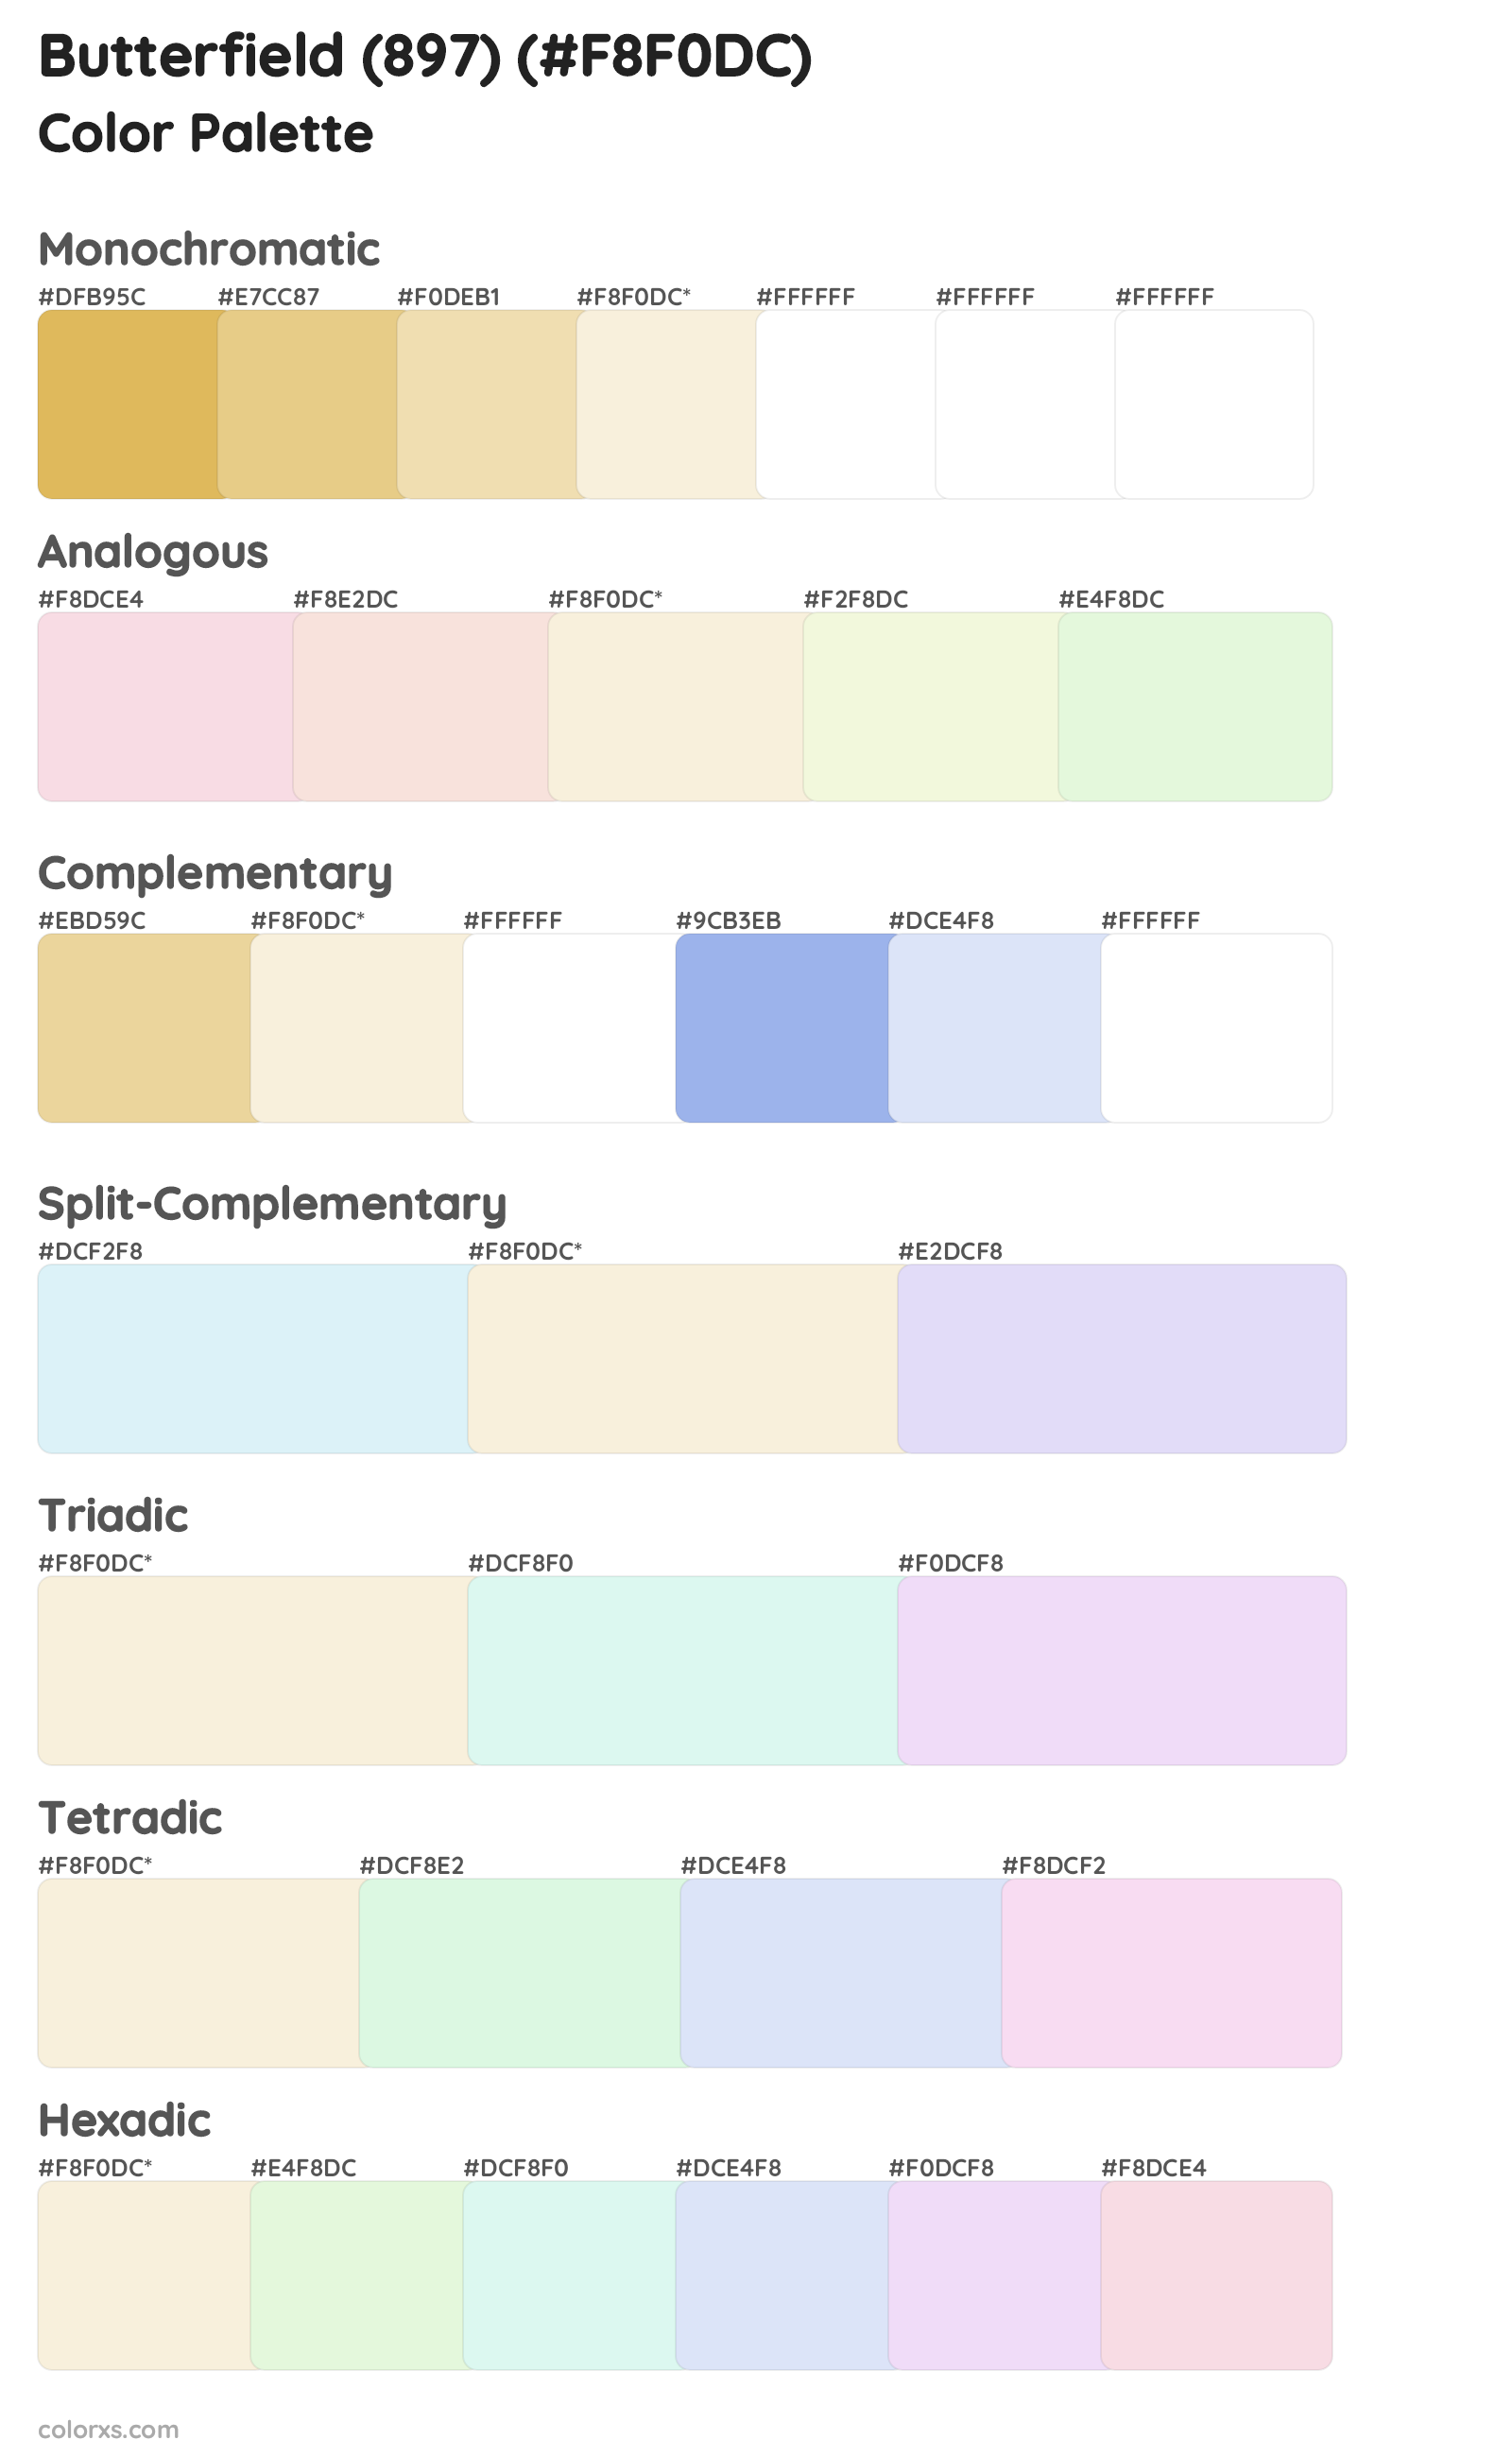 Butterfield (897) Color Scheme Palettes